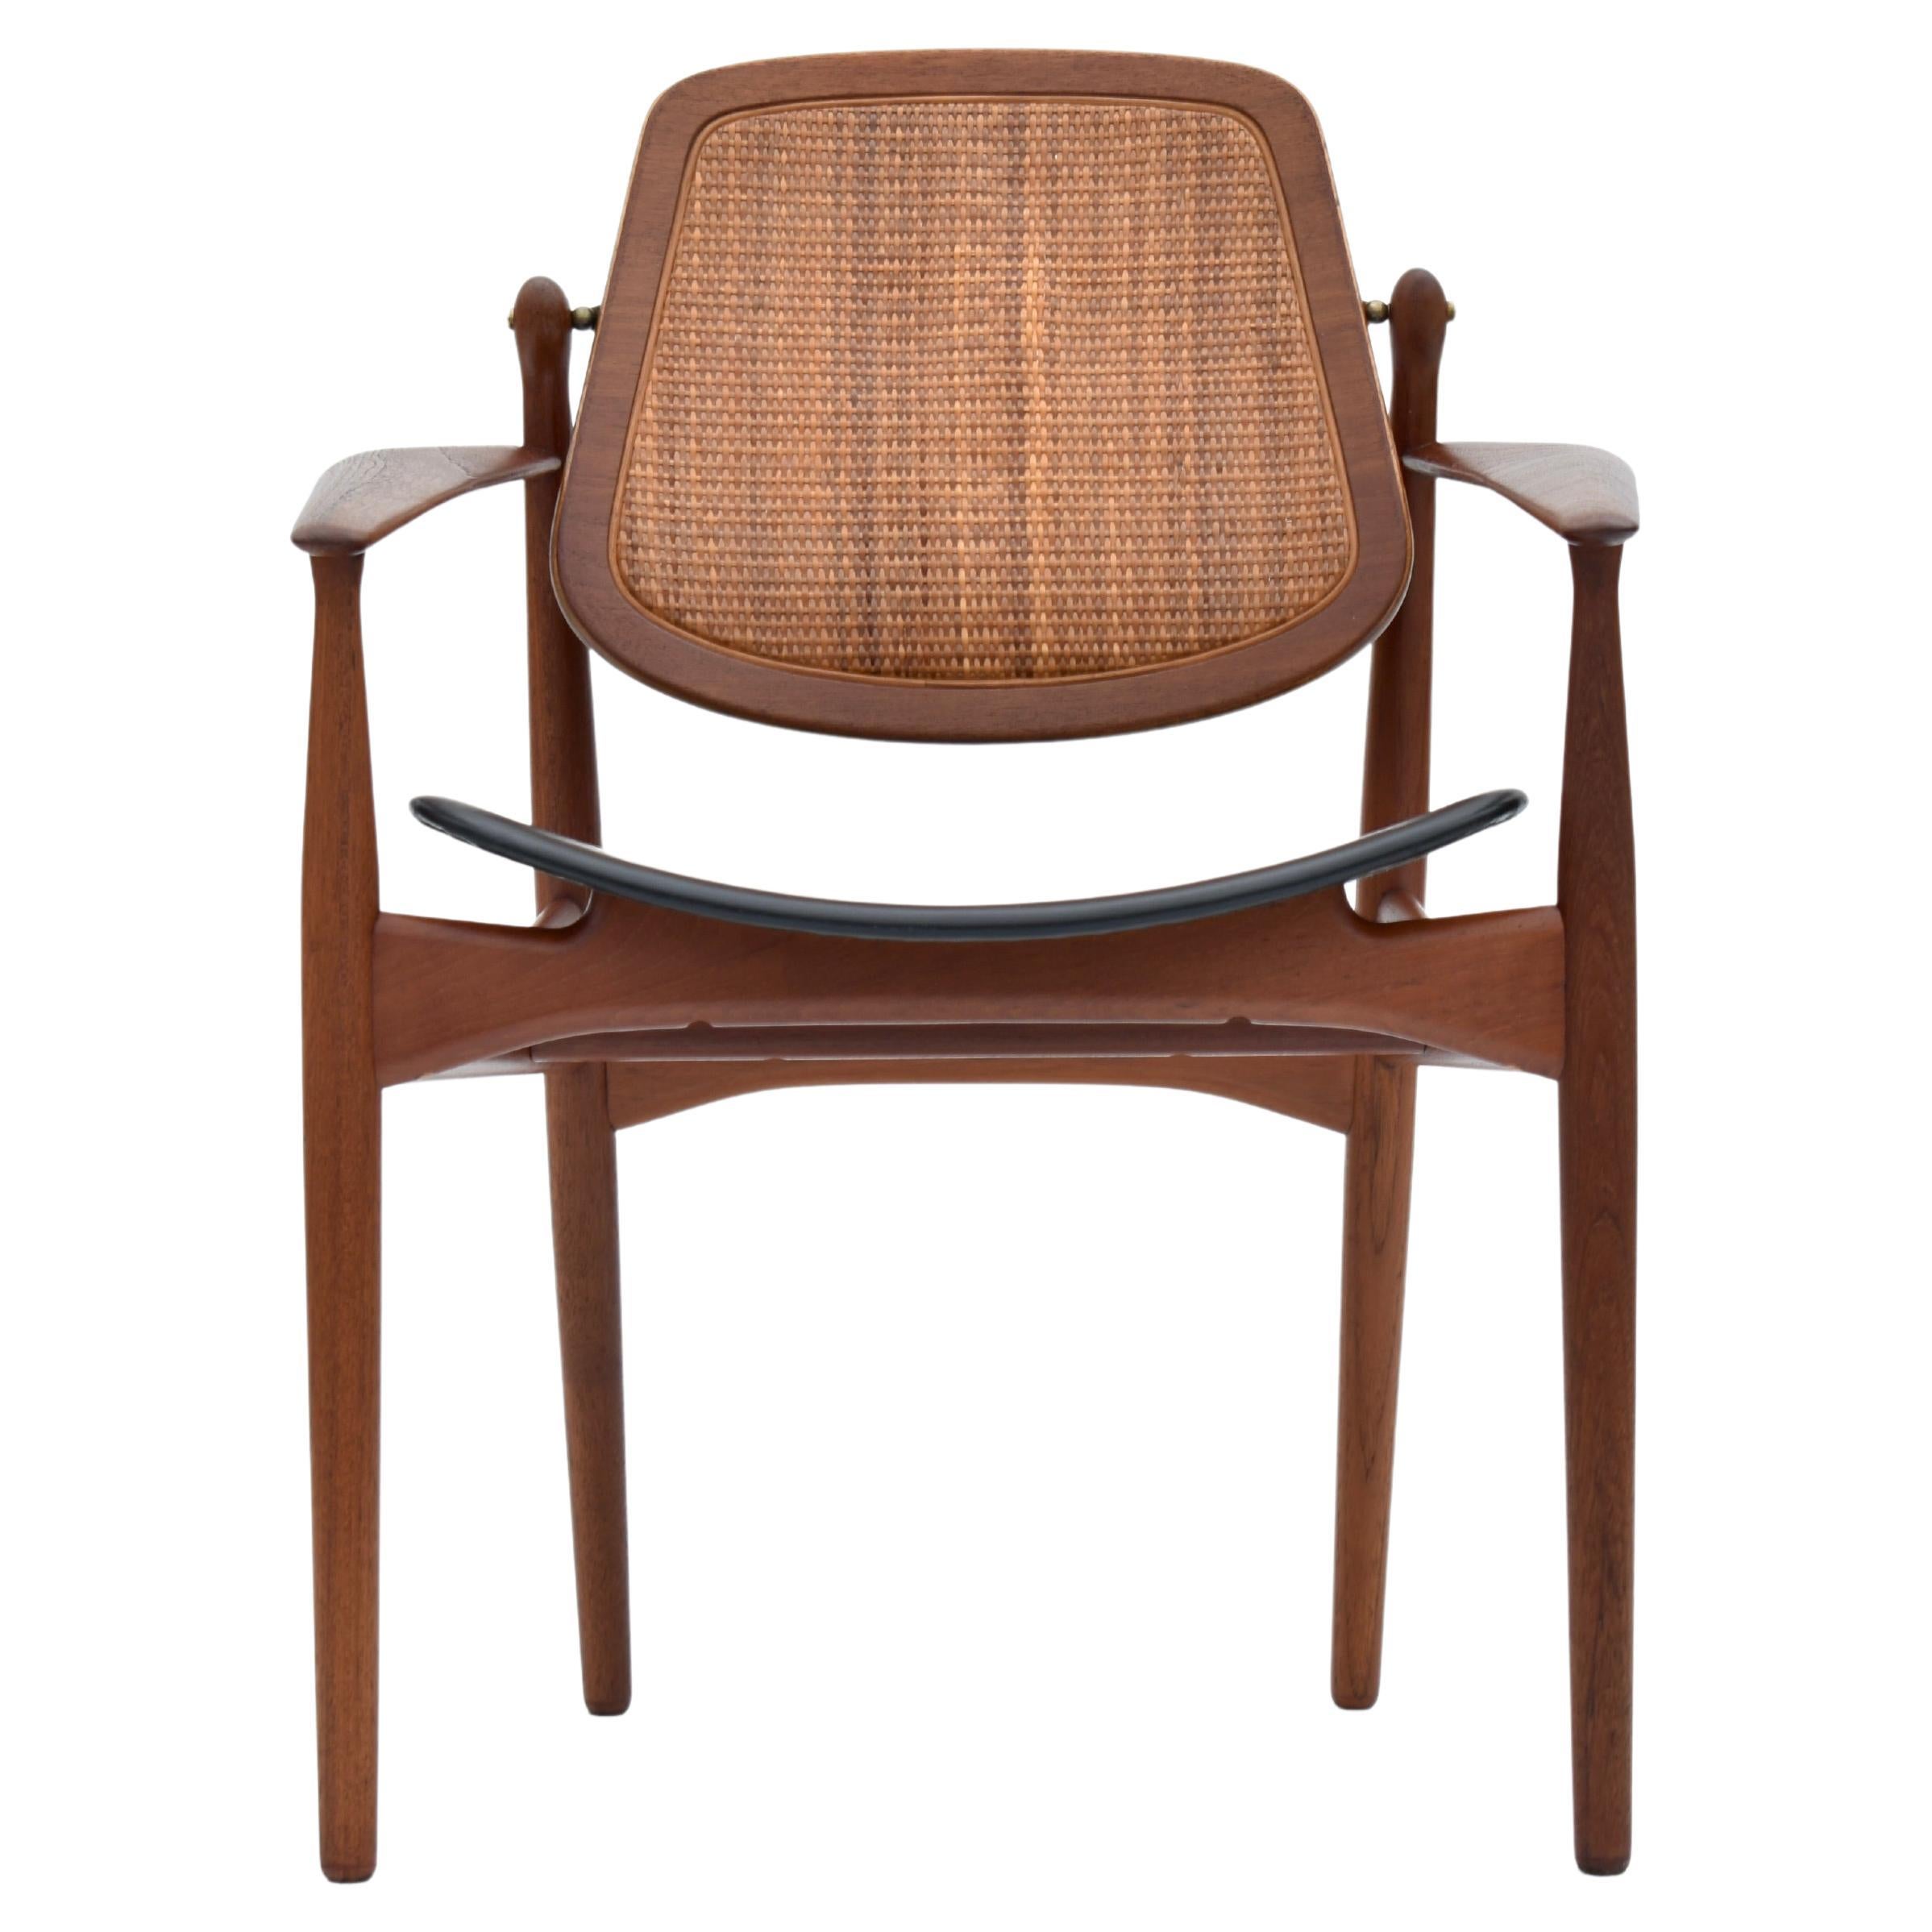 Arne Vodder Model 186 Teak, Rattan & Leather Chair For France & Son, Denmark For Sale